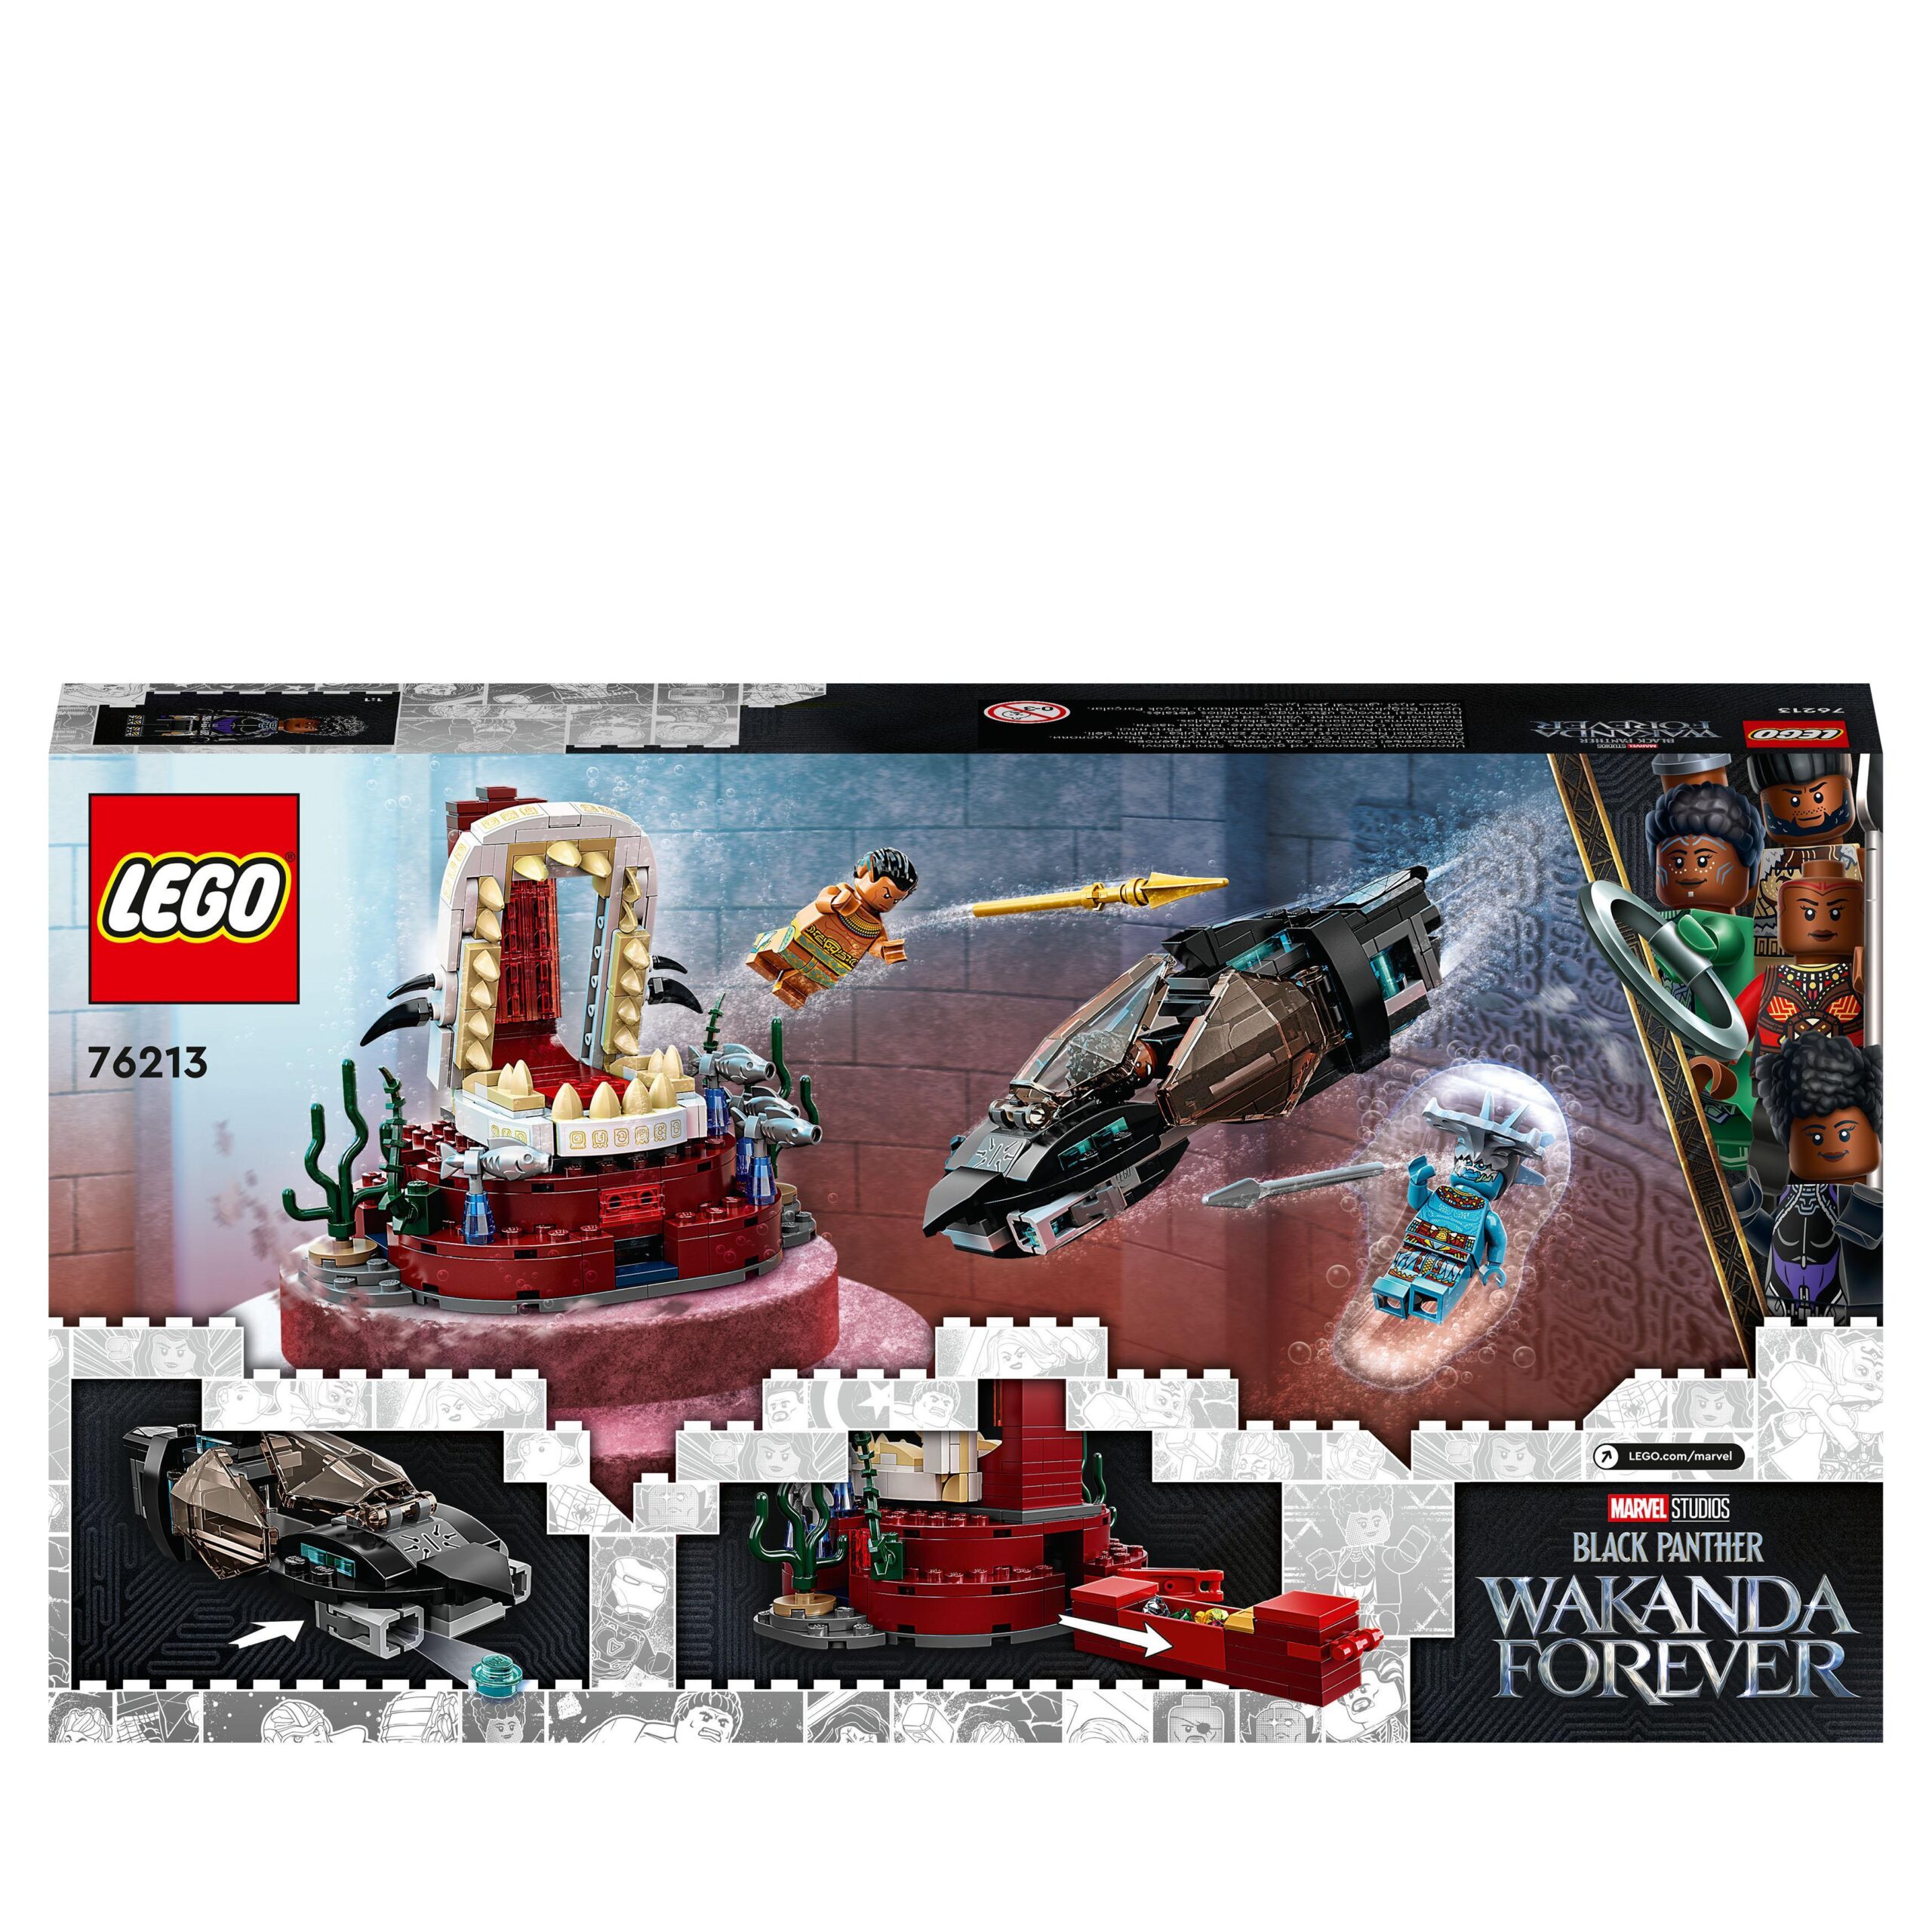 Lego marvel 76213 la stanza del trono di re namor, film supereroi black panther, sottomarino giocattolo, giochi per bambini - LEGO SUPER HEROES, Avengers